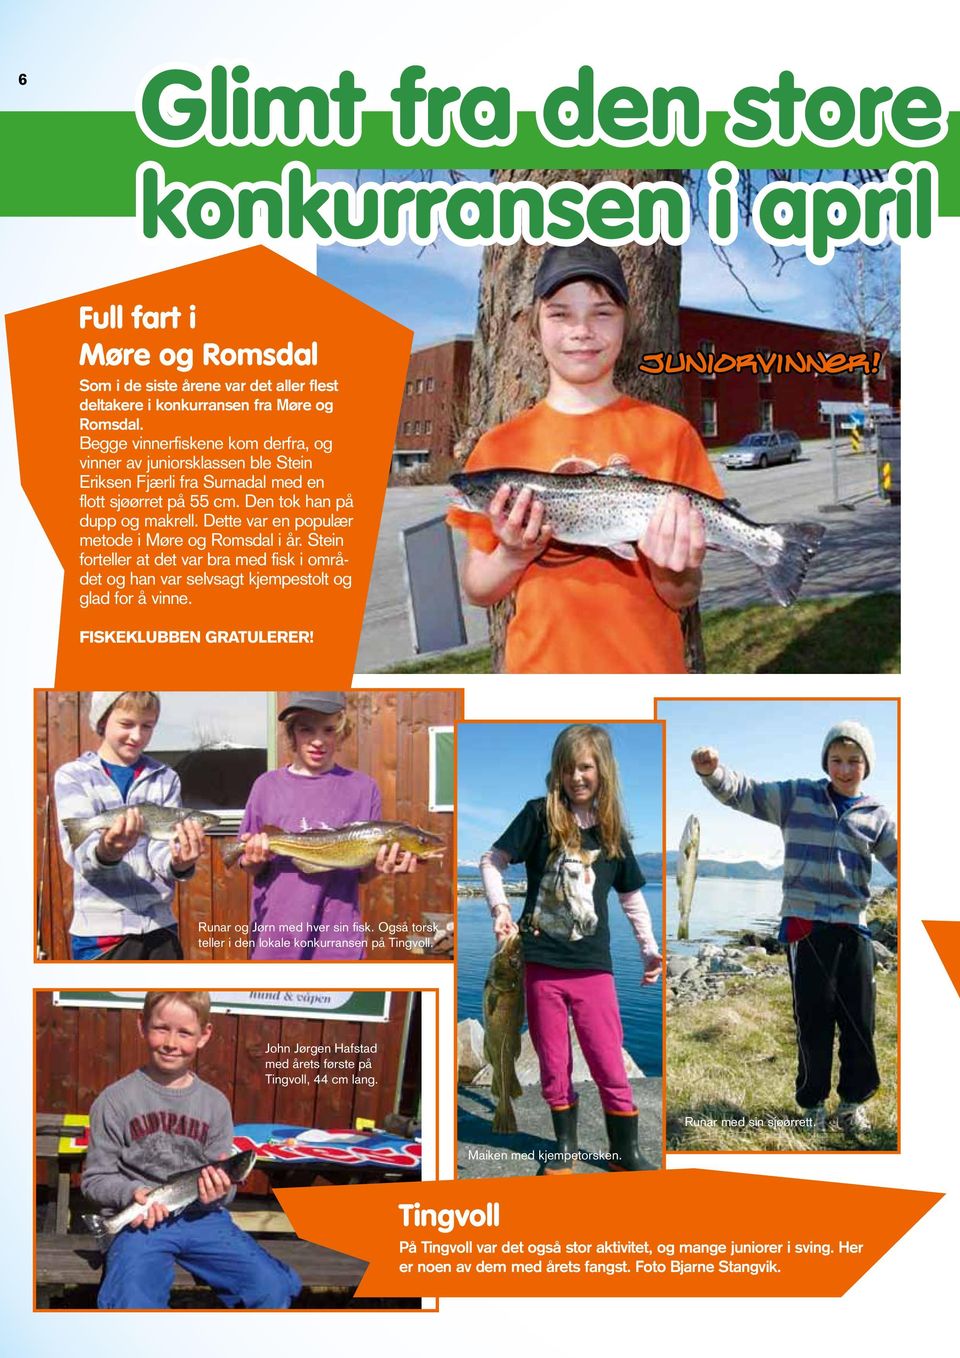 Dette var en populær metode i Møre og Romsdal i år. Stein forteller at det var bra med fisk i området og han var selvsagt kjempestolt og glad for å vinne. Juniorvinner! Fiskeklubben gratulerer!